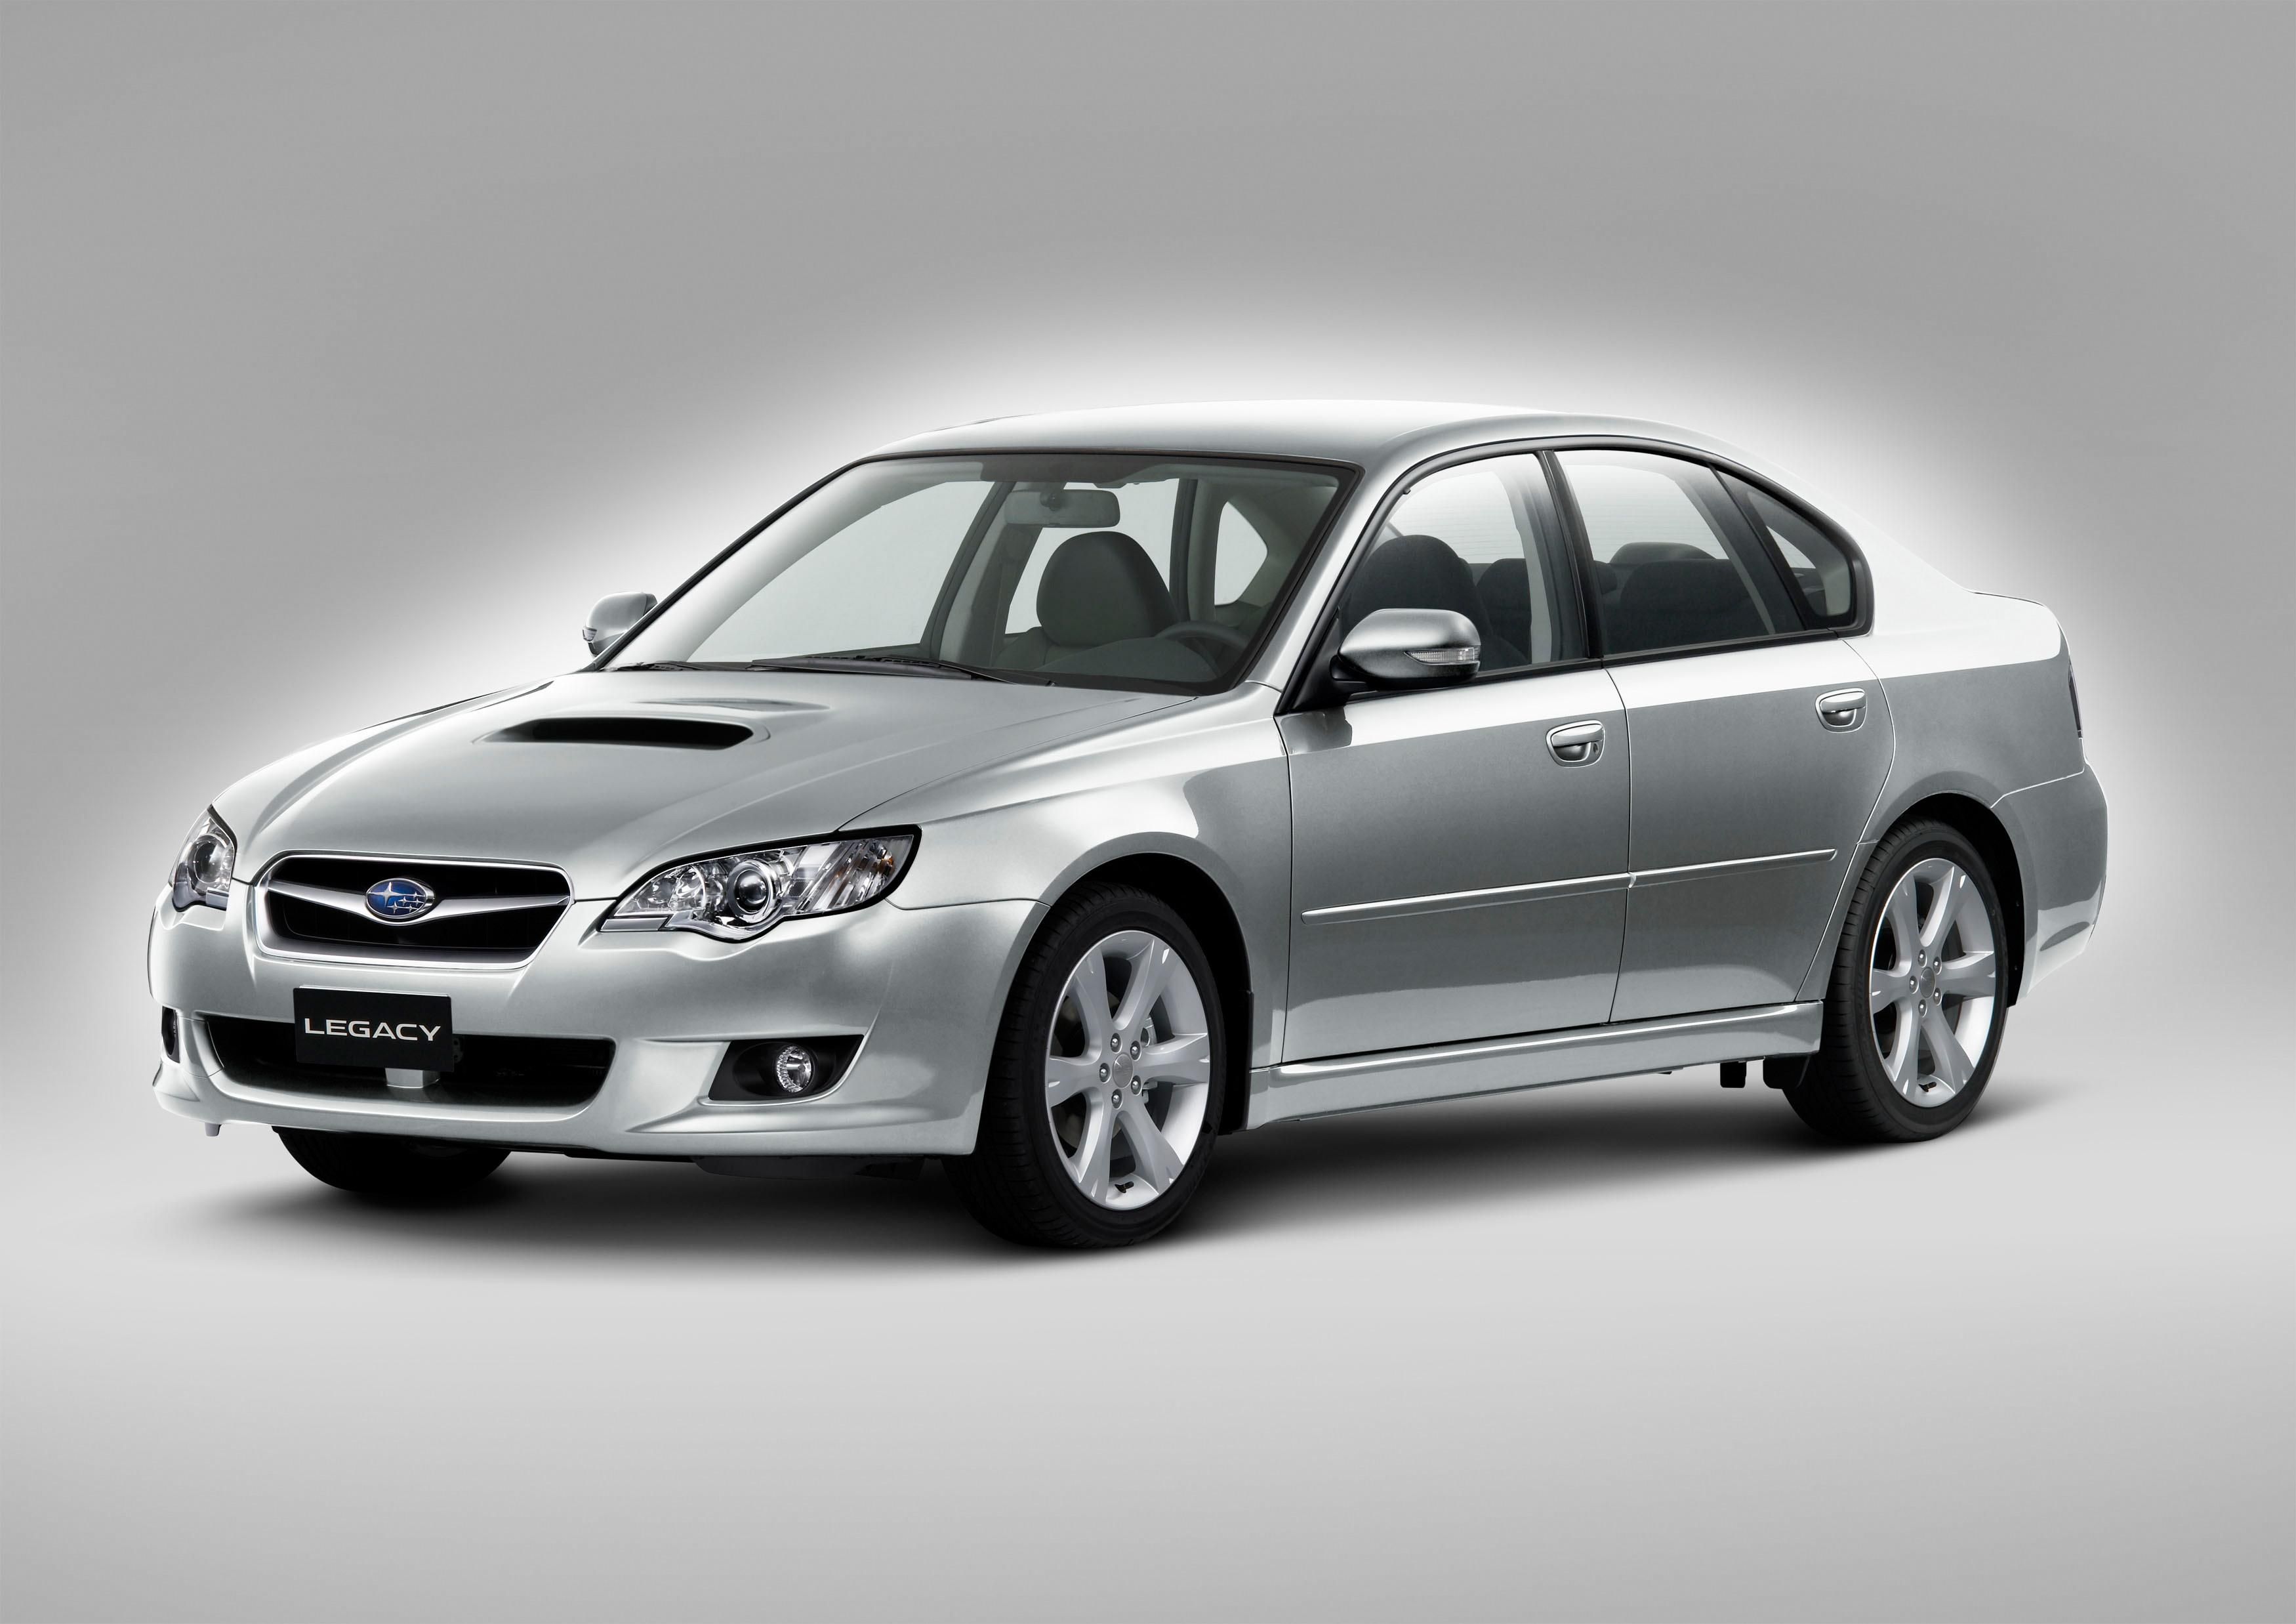 Subaru legacy 3. Subaru Legacy 3.0. Subaru Legacy 2006 седан. Субару Легаси седан 2008. Субару Легаси 2003.